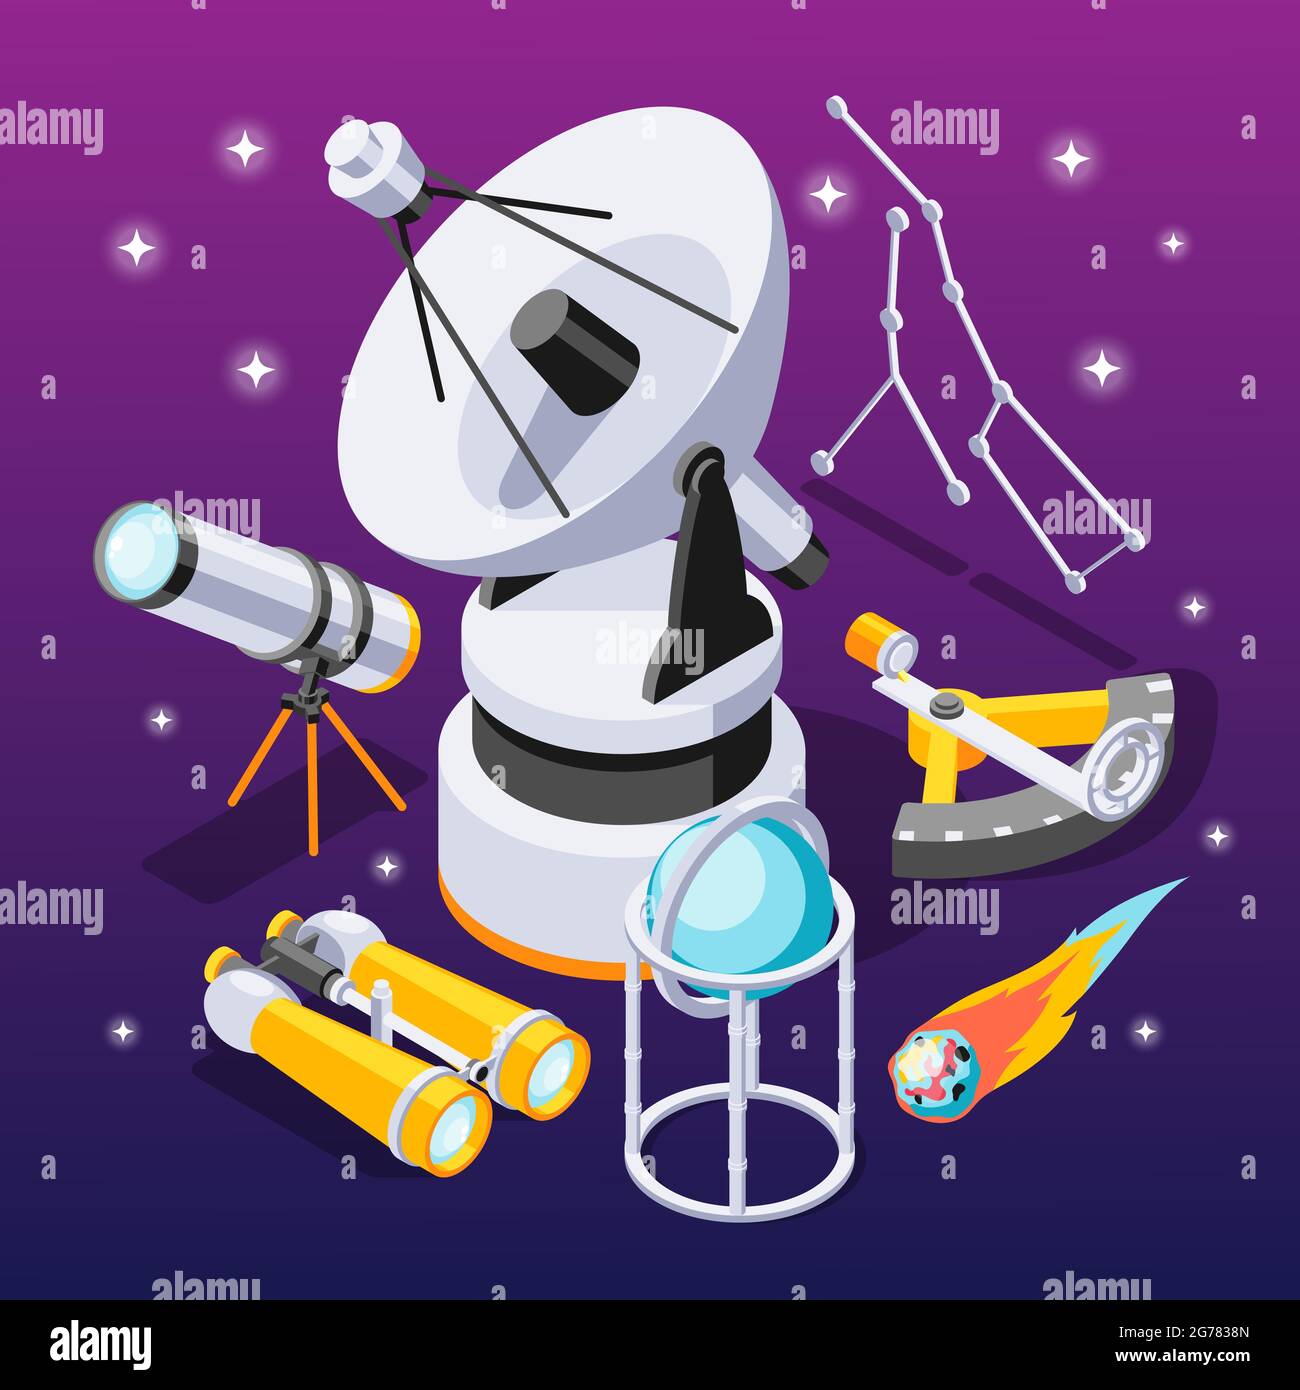 Astronomie isometrische Zusammensetzung mit Symbolen von Beobachtungsgeräten mit Sternbildern auf violettem Gradienten Hintergrund Vektor-Illustration Stock Vektor